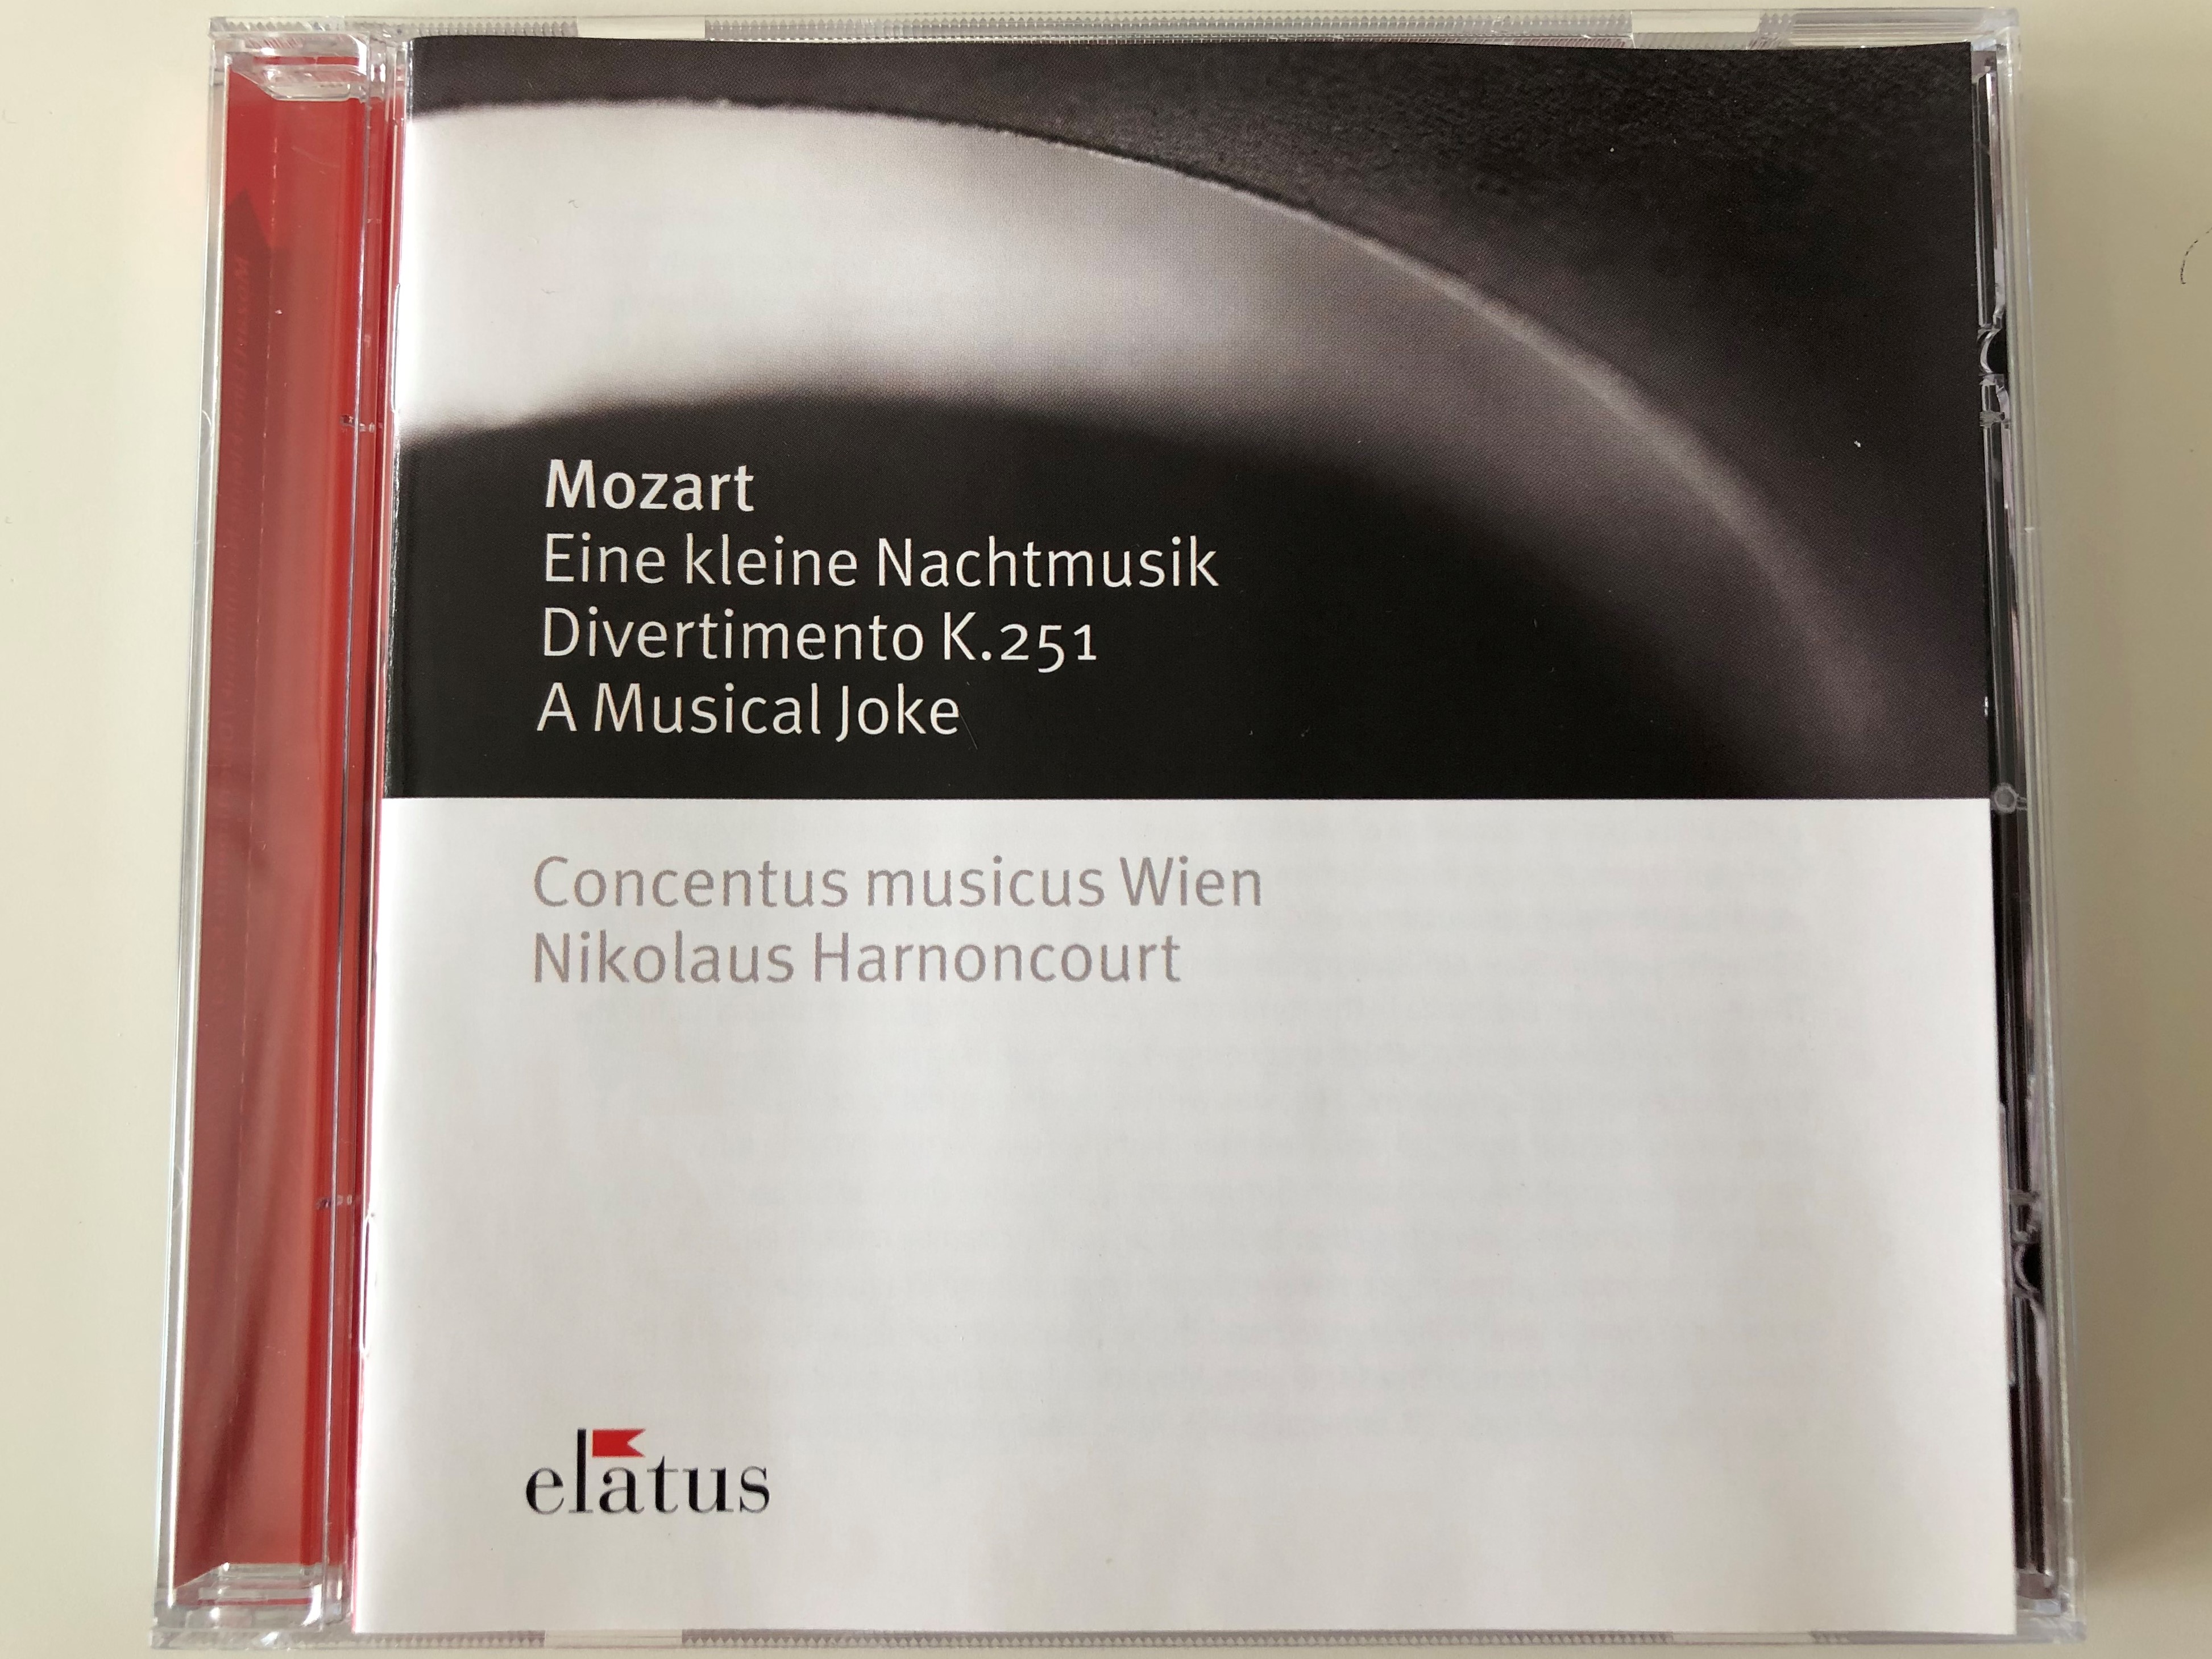 mozart-eine-kleine-nachtmusic-divertimento-k.251-a-musical-joke-concentus-musicus-wien-nikolaus-harnoncourt-elatus-audio-cd-2003-2564-60123-2-1-.jpg